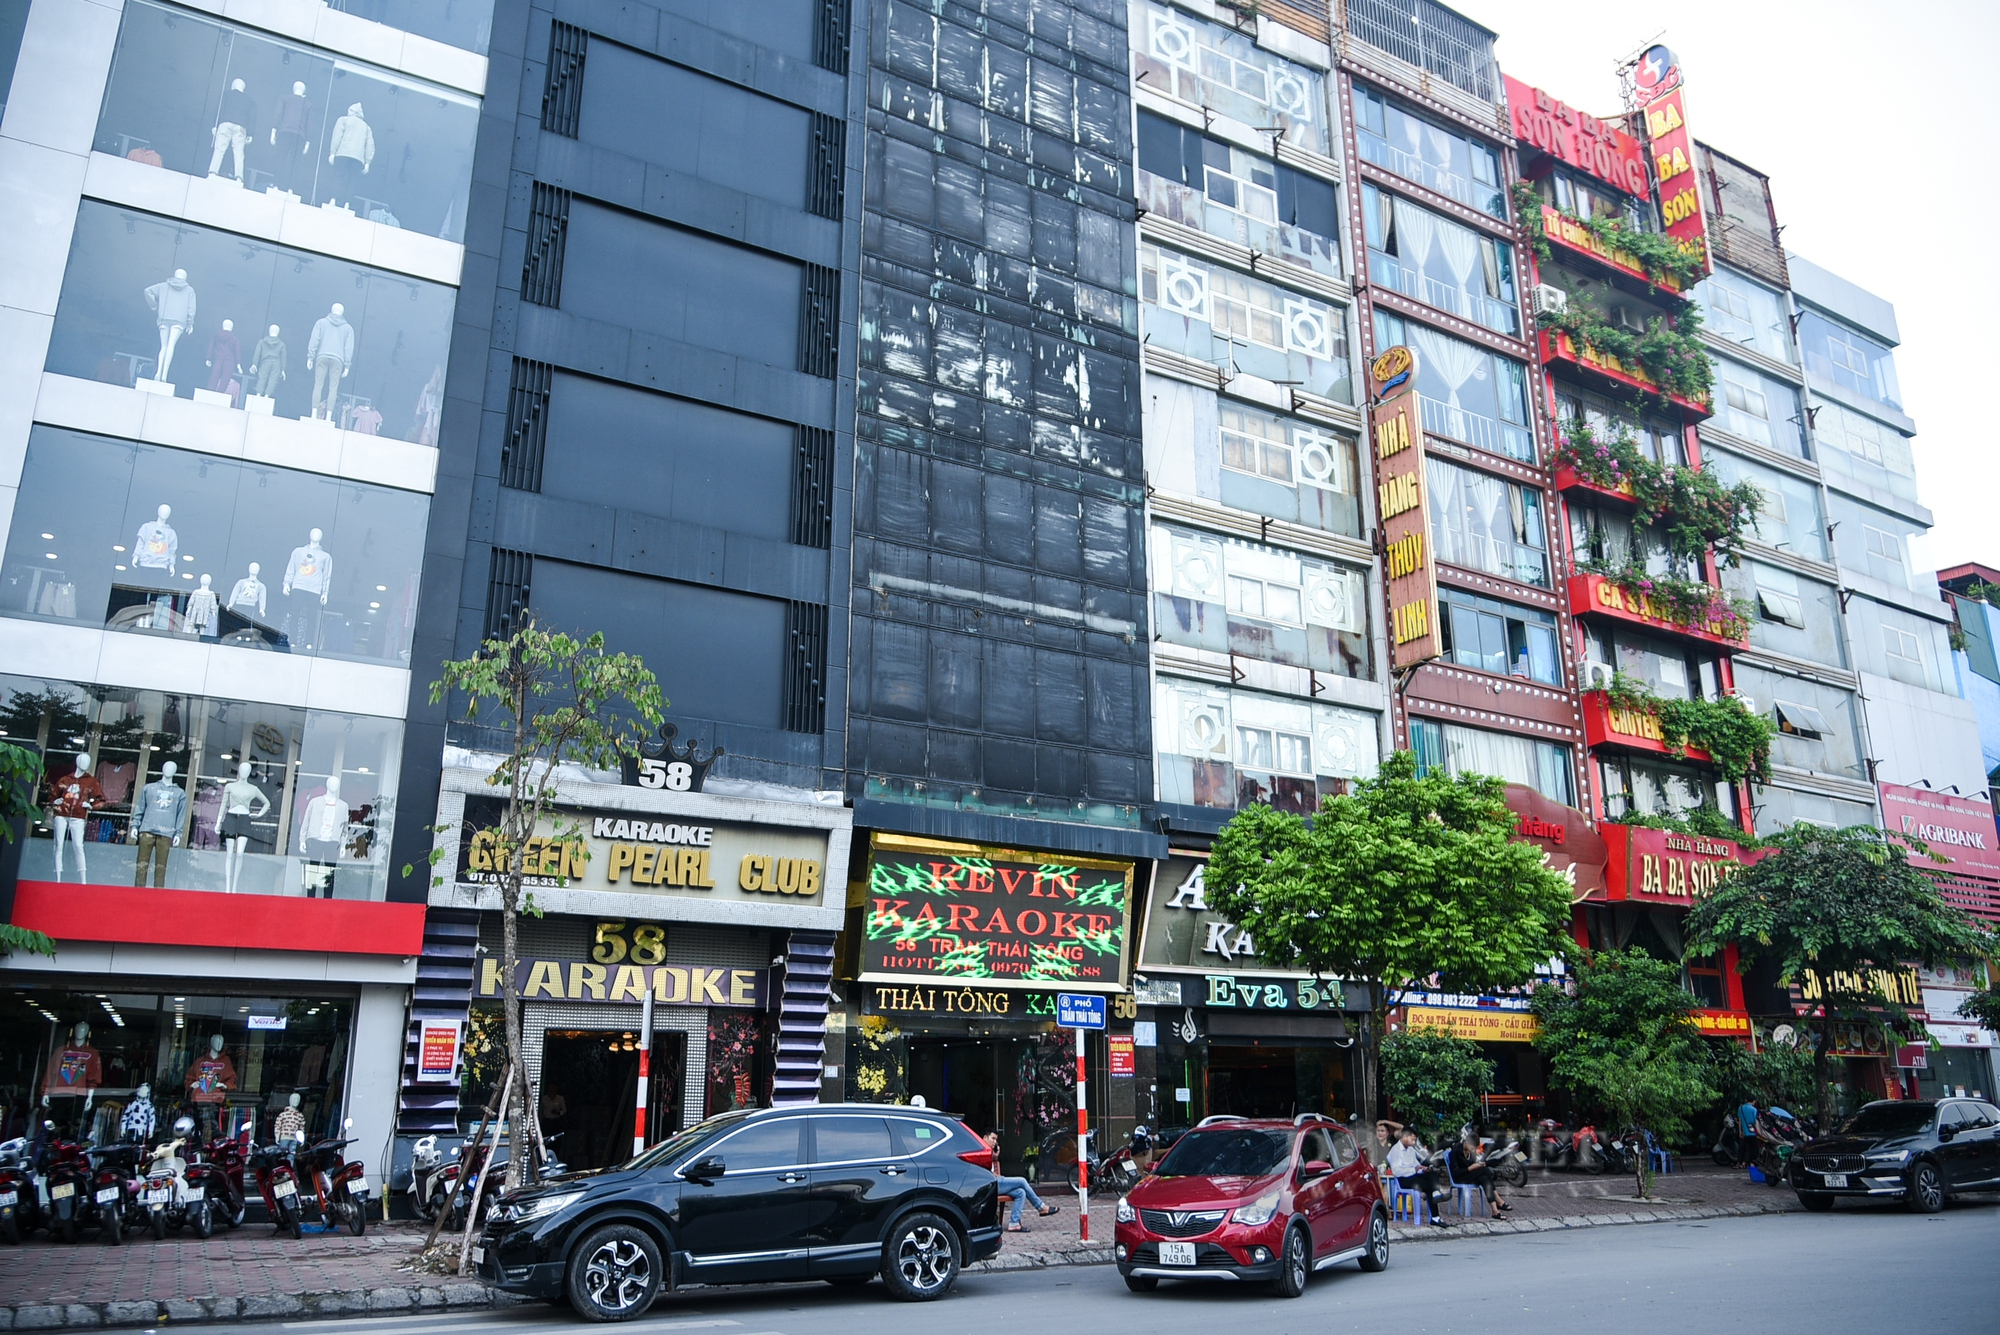 Sau hàng loạt vụ cháy, nhiều quán karaoke ở Hà Nội rơi vào tình trạng ế khách - Ảnh 1.